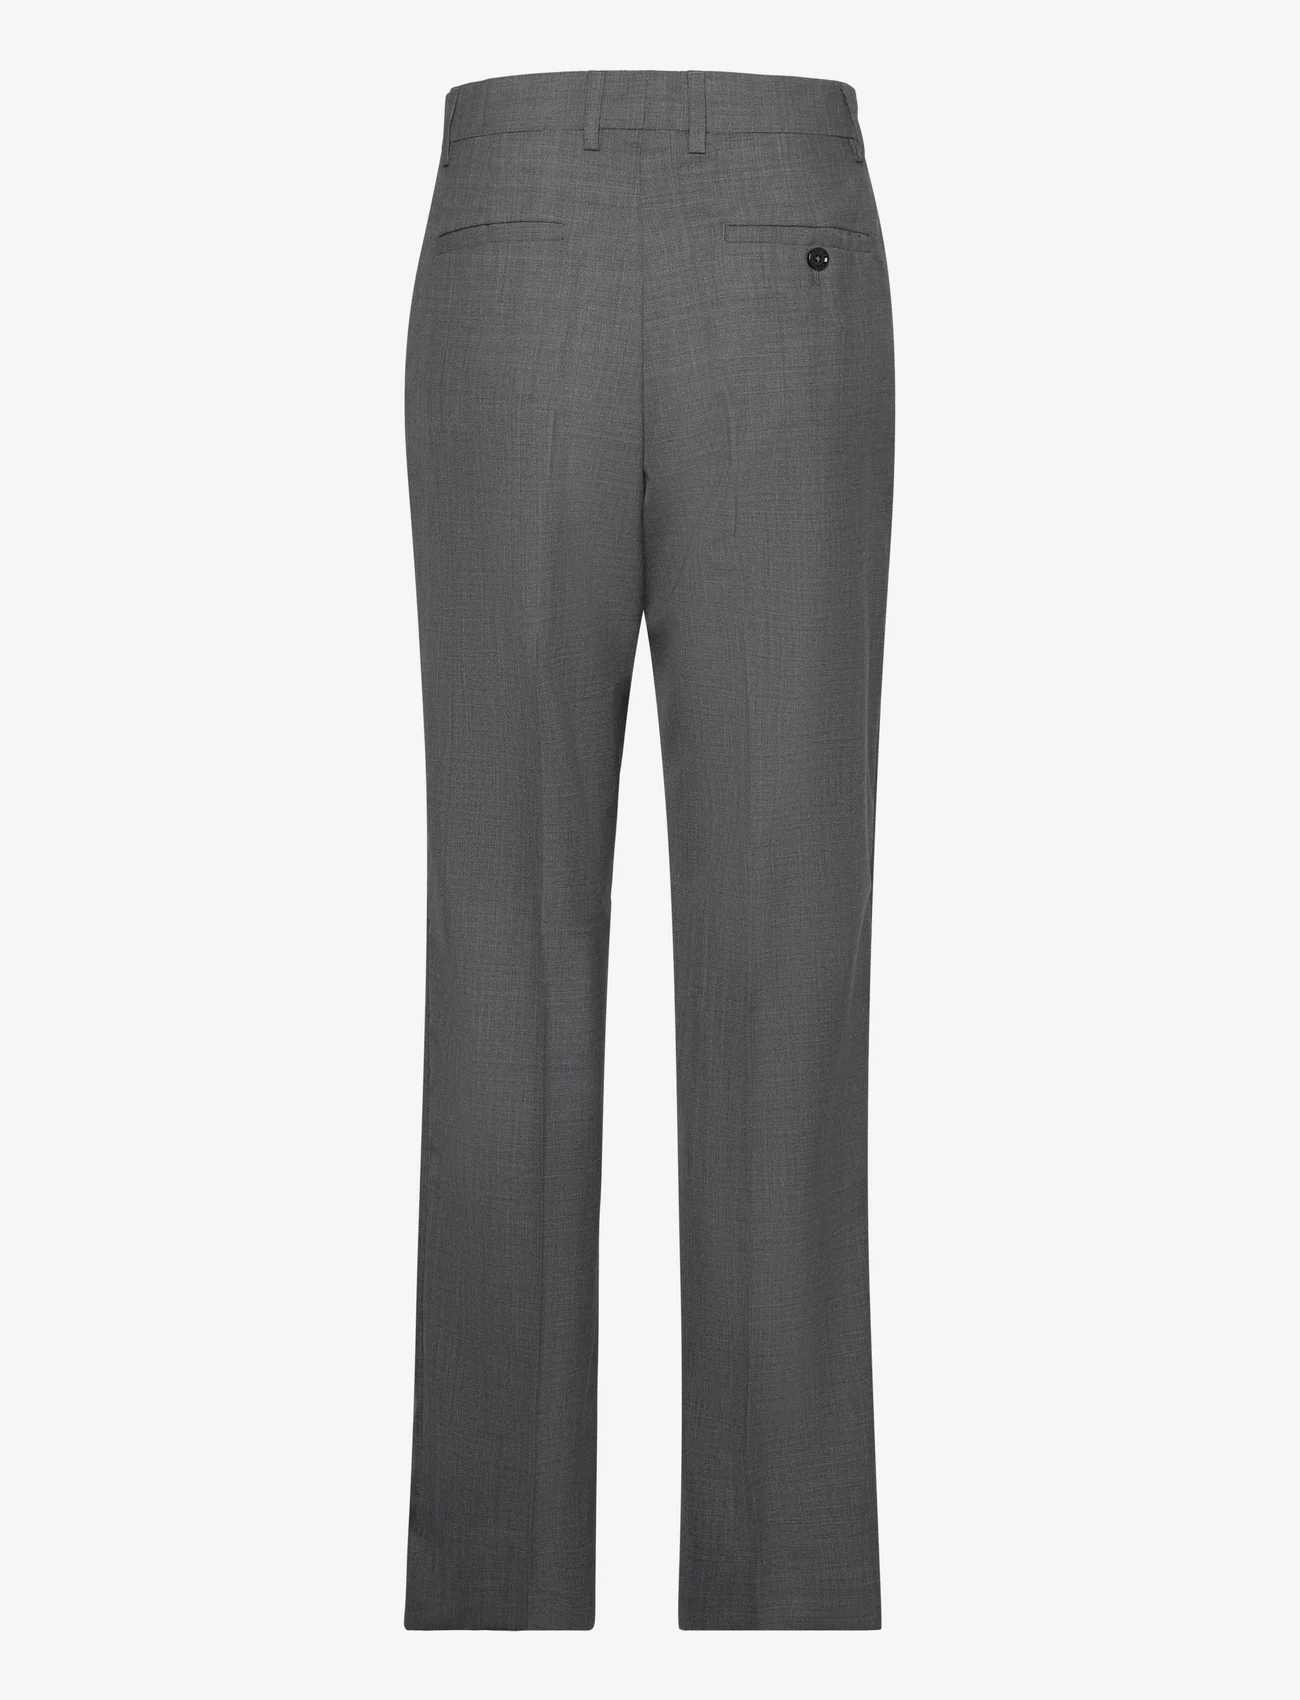 Hope - Straight-leg Suit Trousers - formele broeken - grey melange - 1